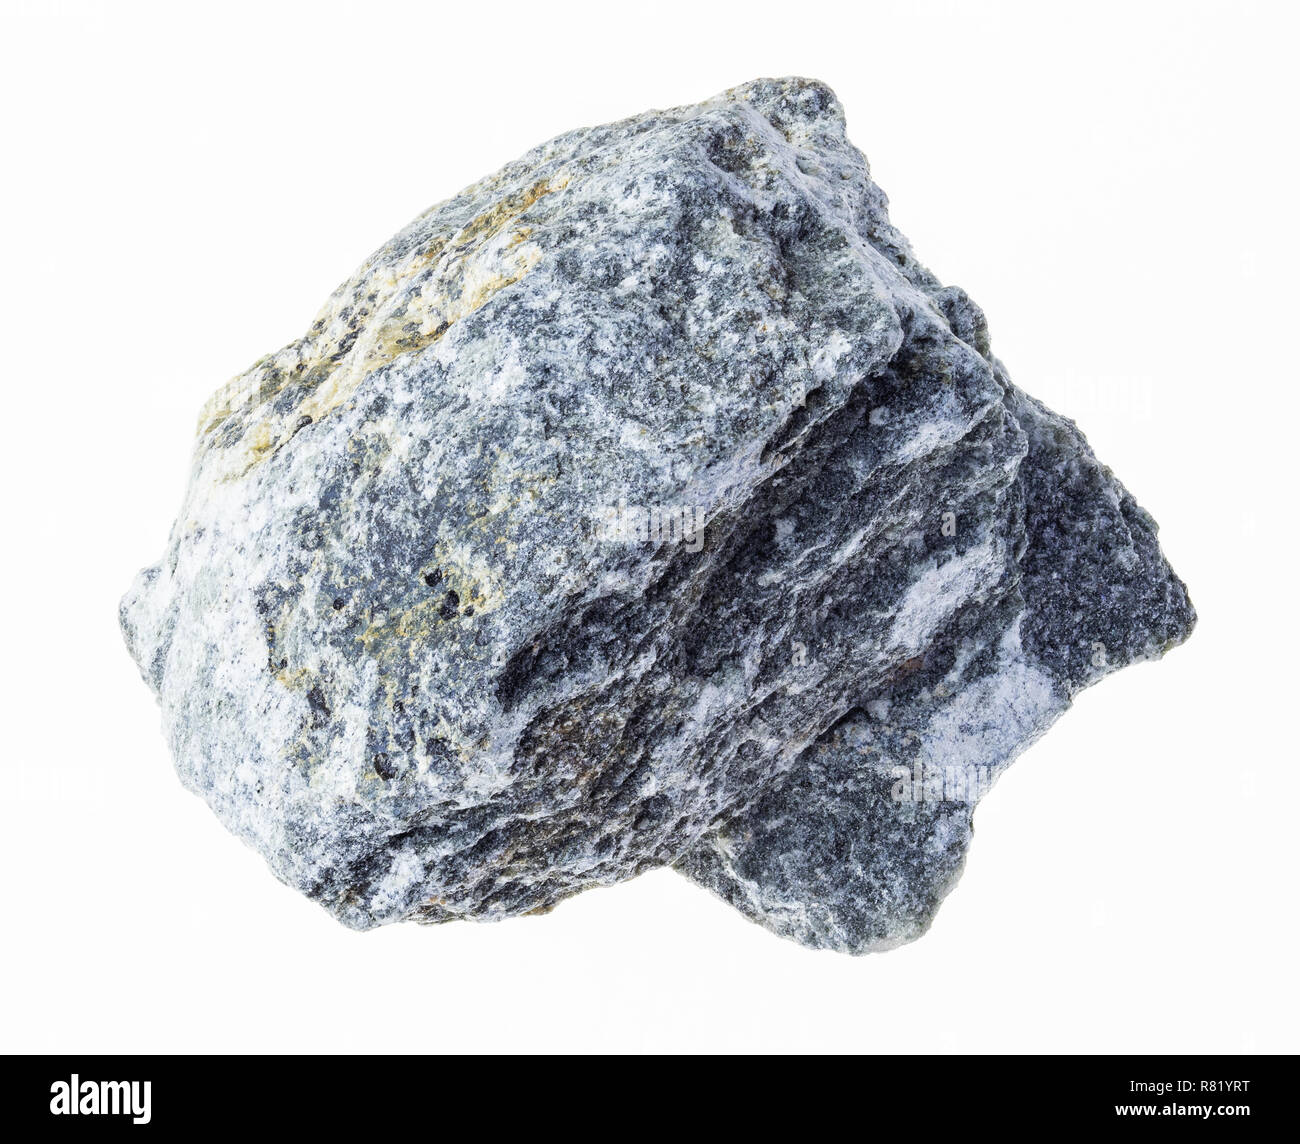 Makrofotografie von natürlichen Mineral aus geologische Sammlung - talkum - Schiefer (Speckstein) Stein auf weißem Hintergrund Stockfoto